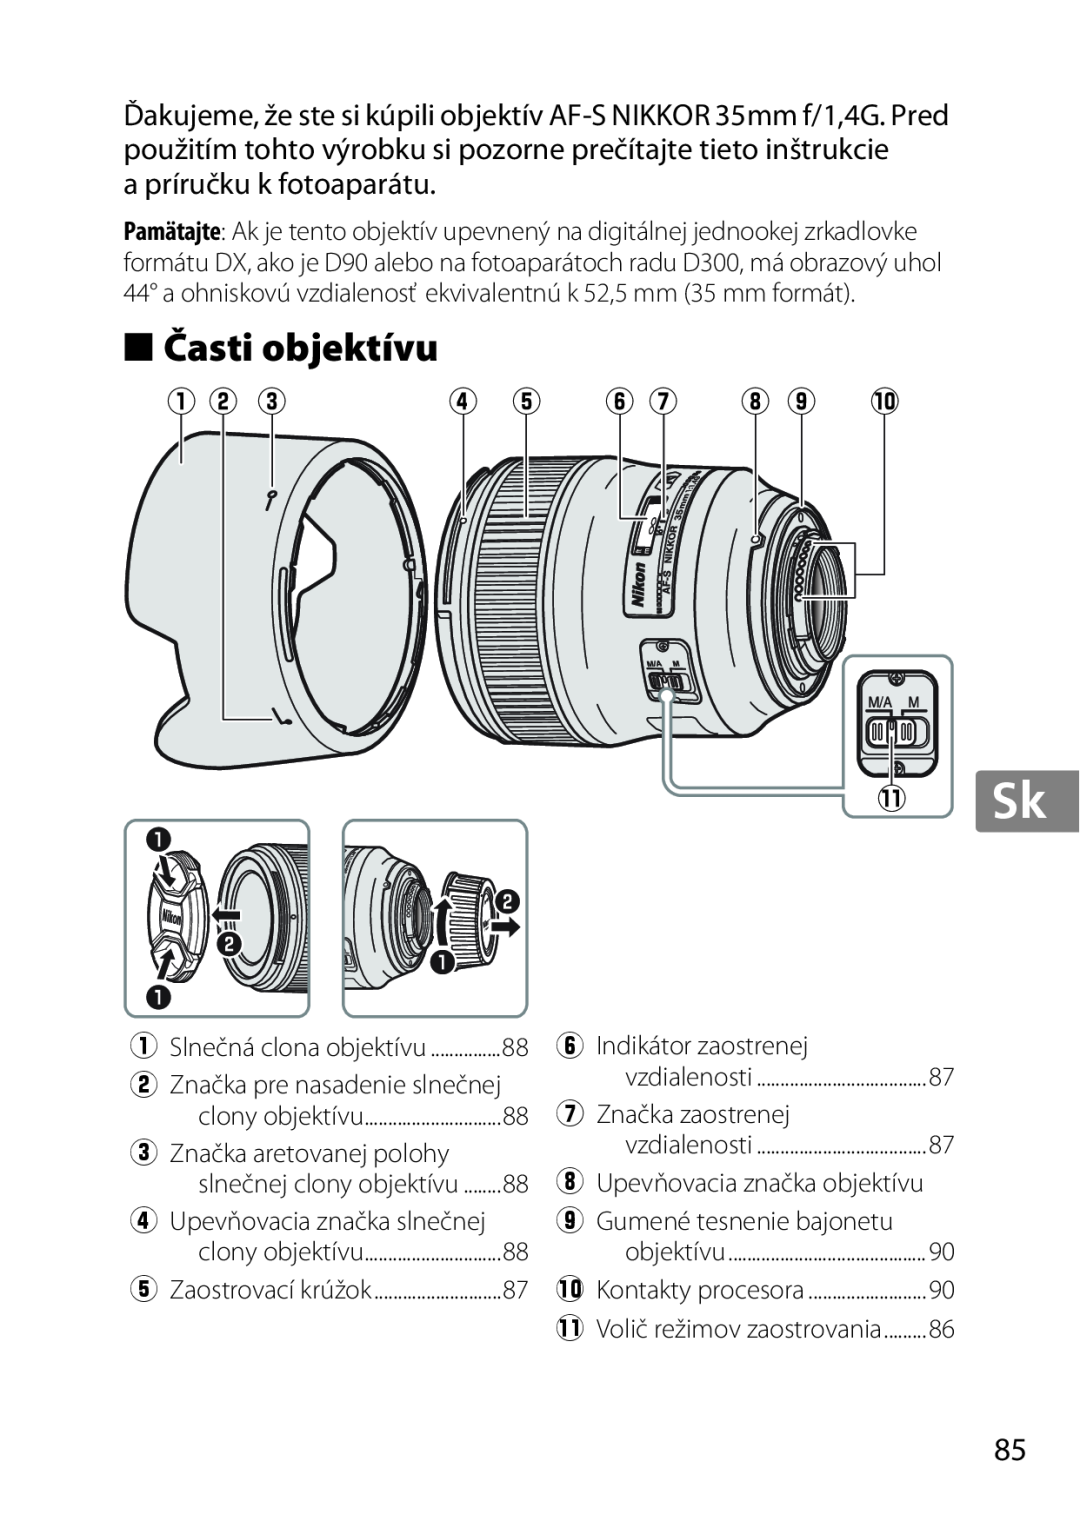 Nikon 35mmf14G, AF-S, 2198 Časti objektívu, q w e, y u i o !0 1 Sk, eZnačka aretovanej polohy, rUpevňovacia značka slnečnej 